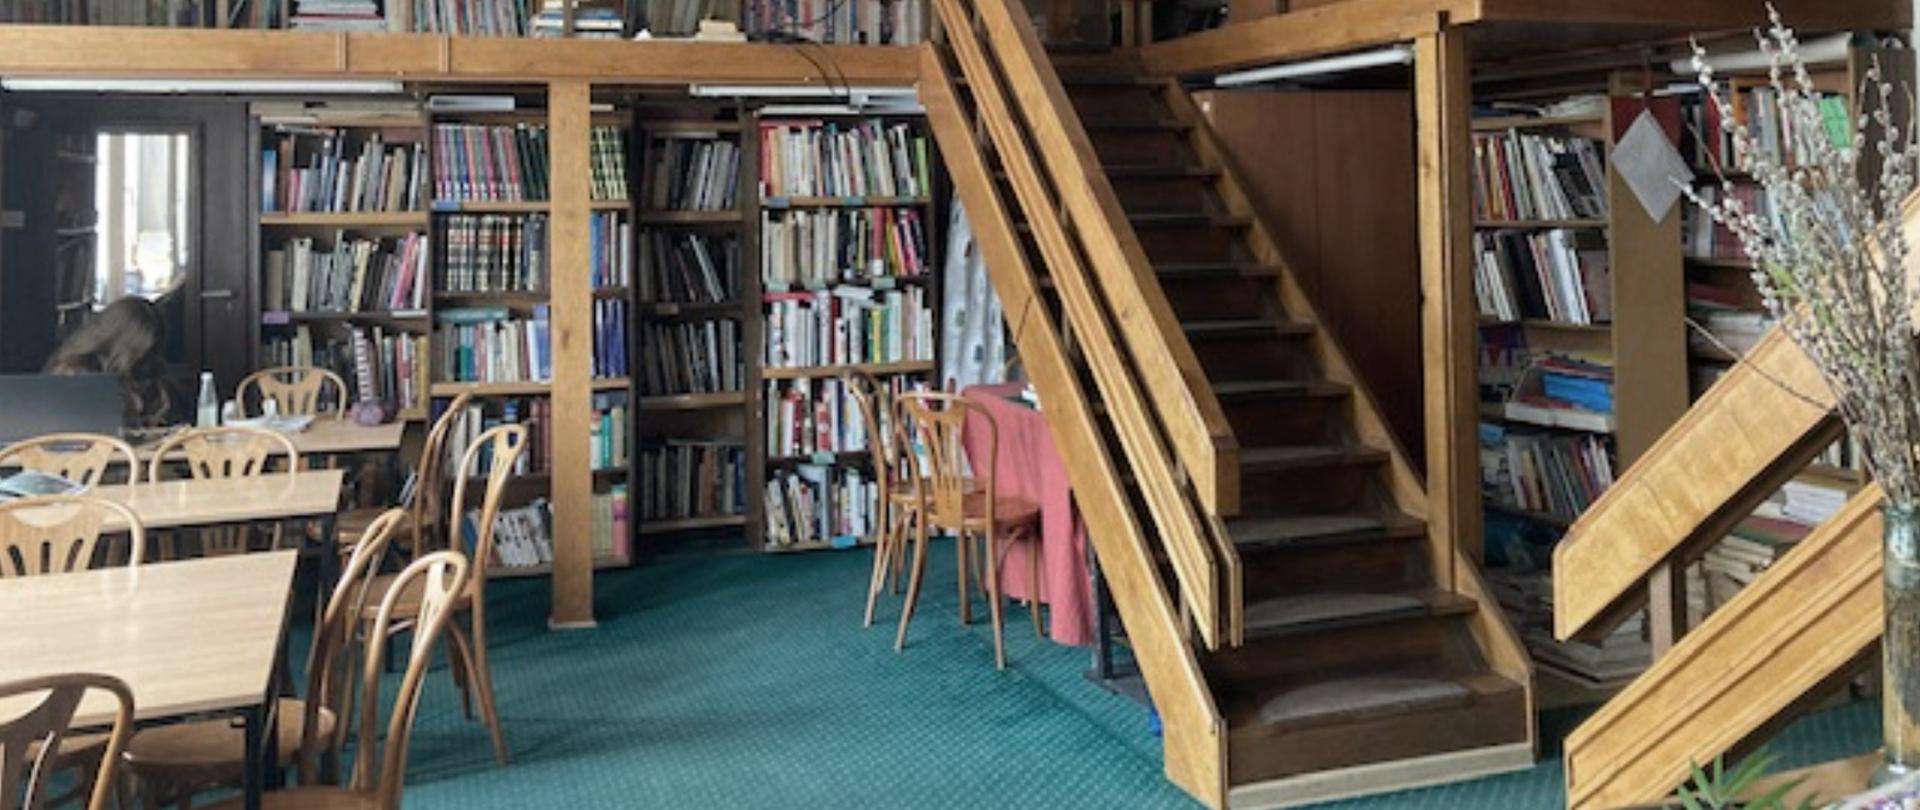 na zdjęciu jest widoczne wnętrze biblioteki szkolnej. Jest to dwupoziomowa sala z licznymi półkami na książki. Na antresolę prowadzą drewniane schody. Na podłodze znajduje się zielona wykładzina.